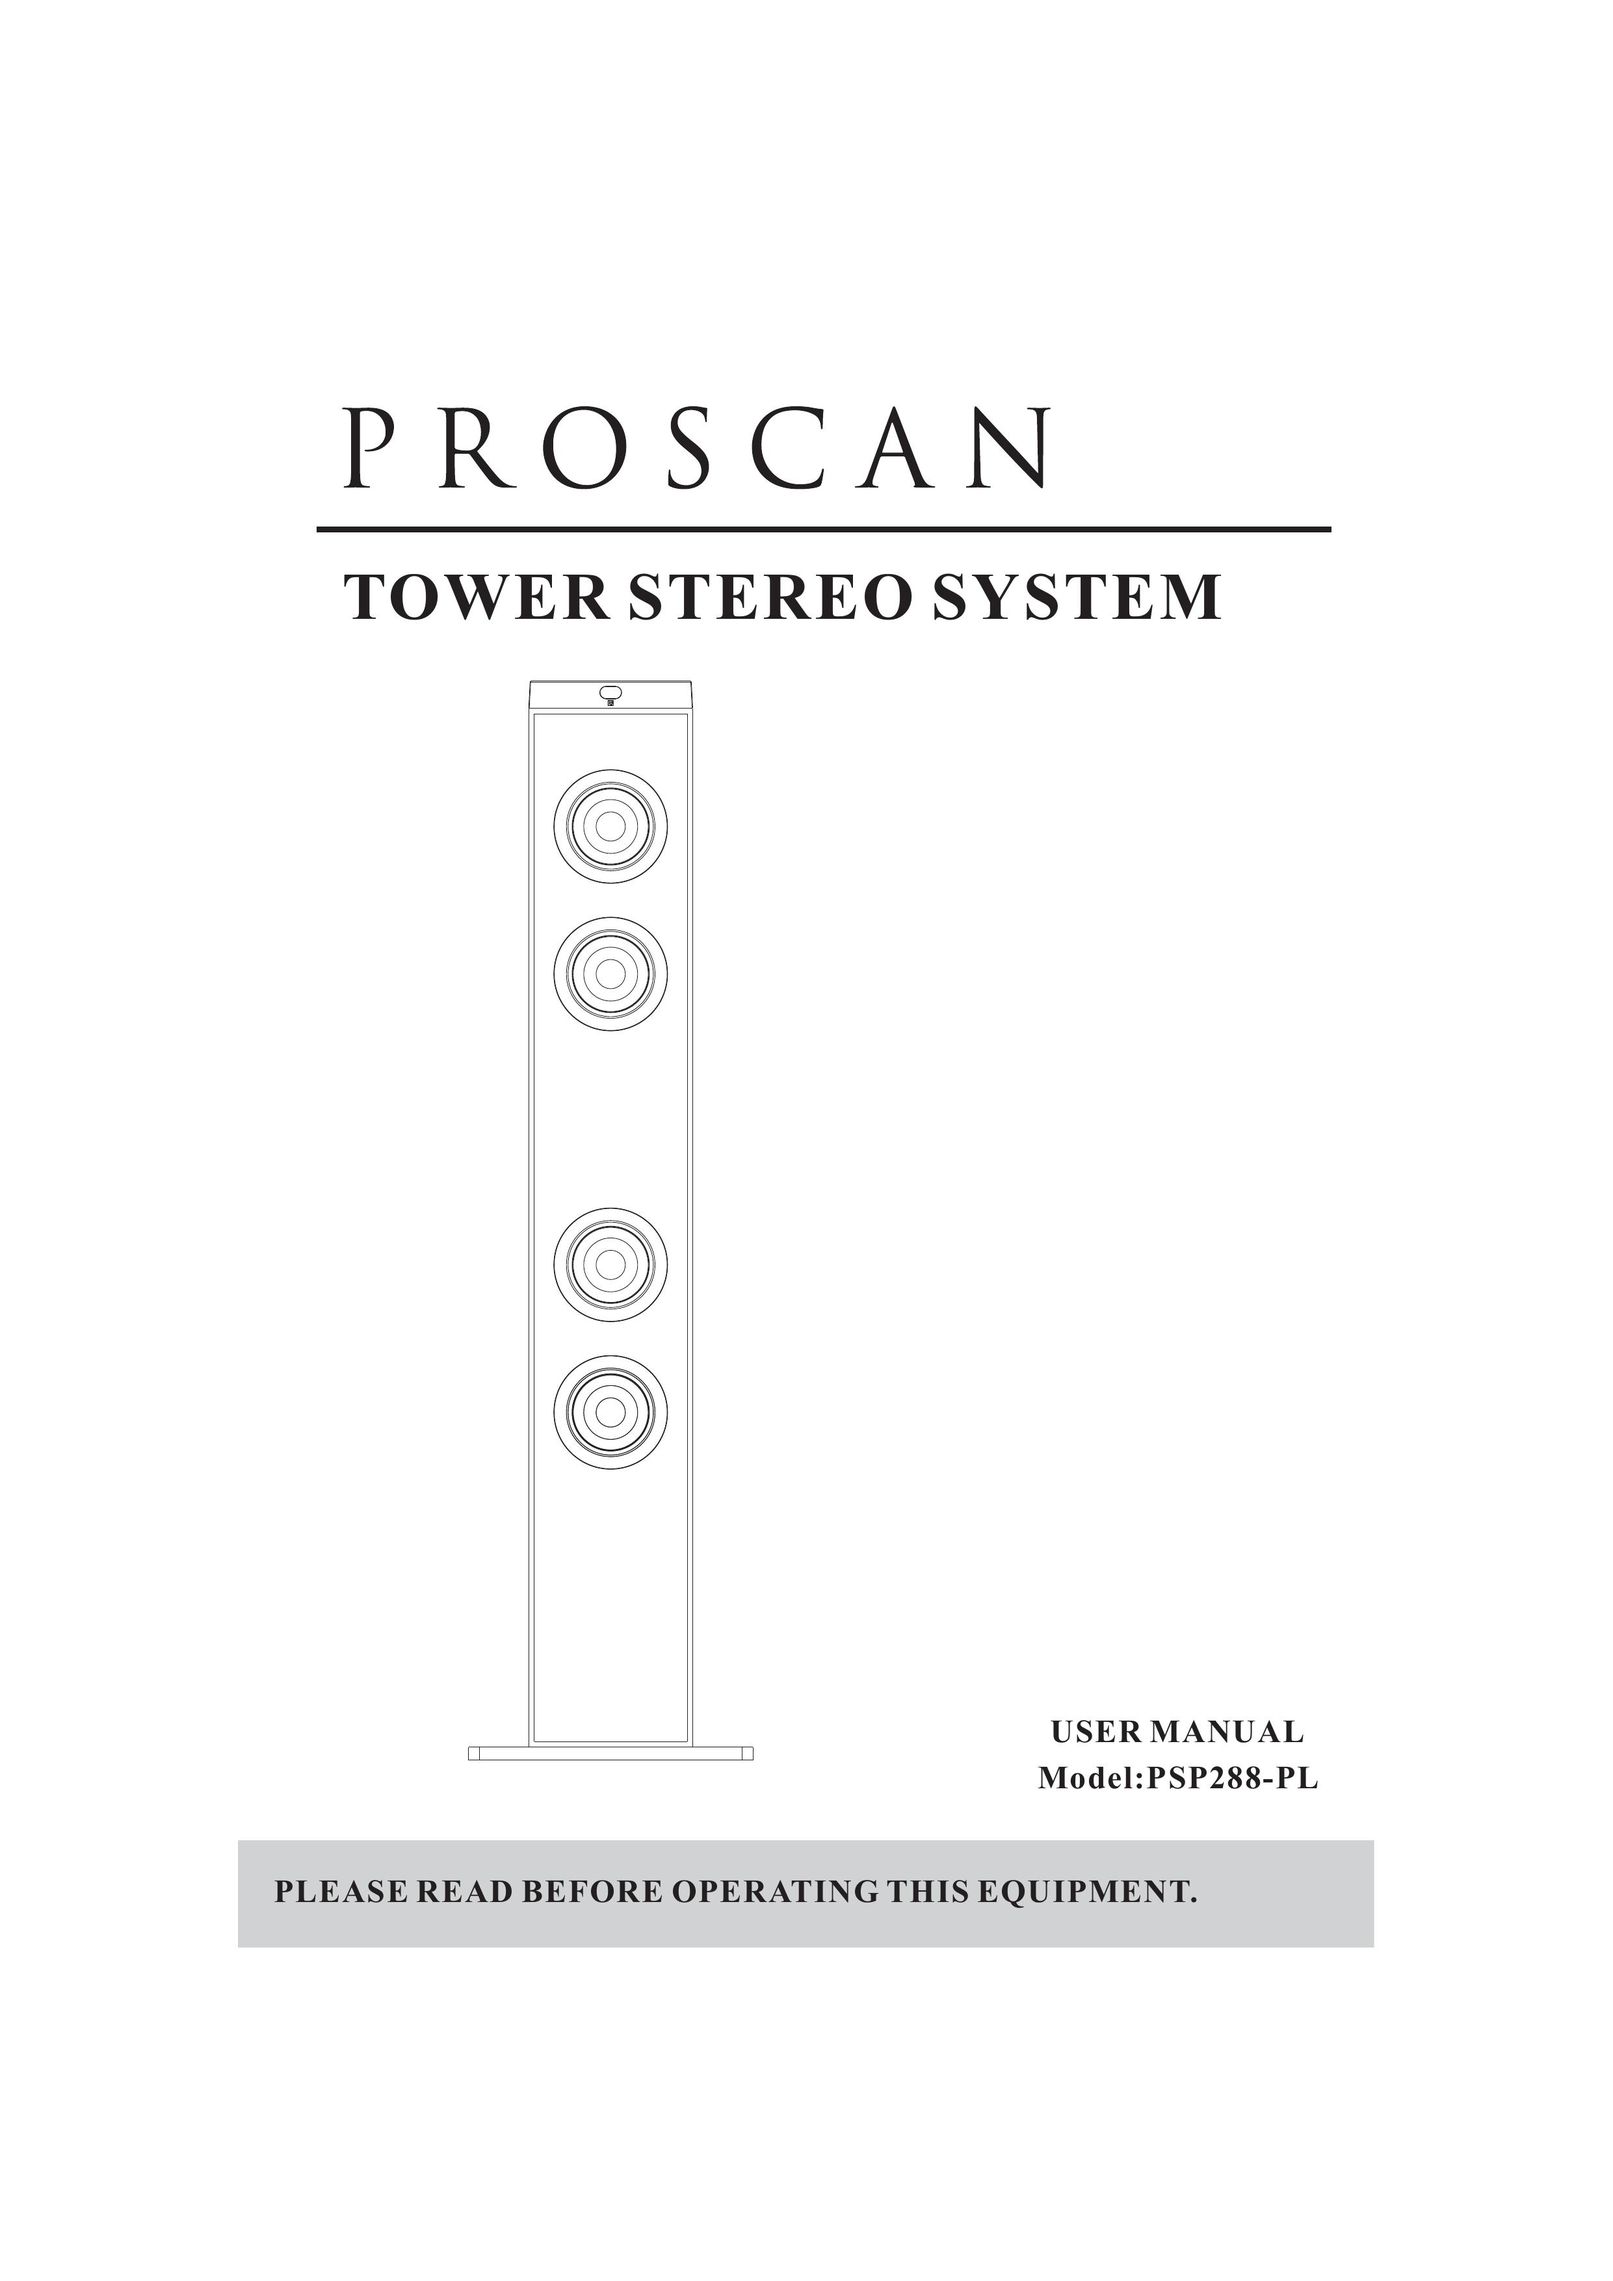 ProScan PSP288-PL Stereo System User Manual